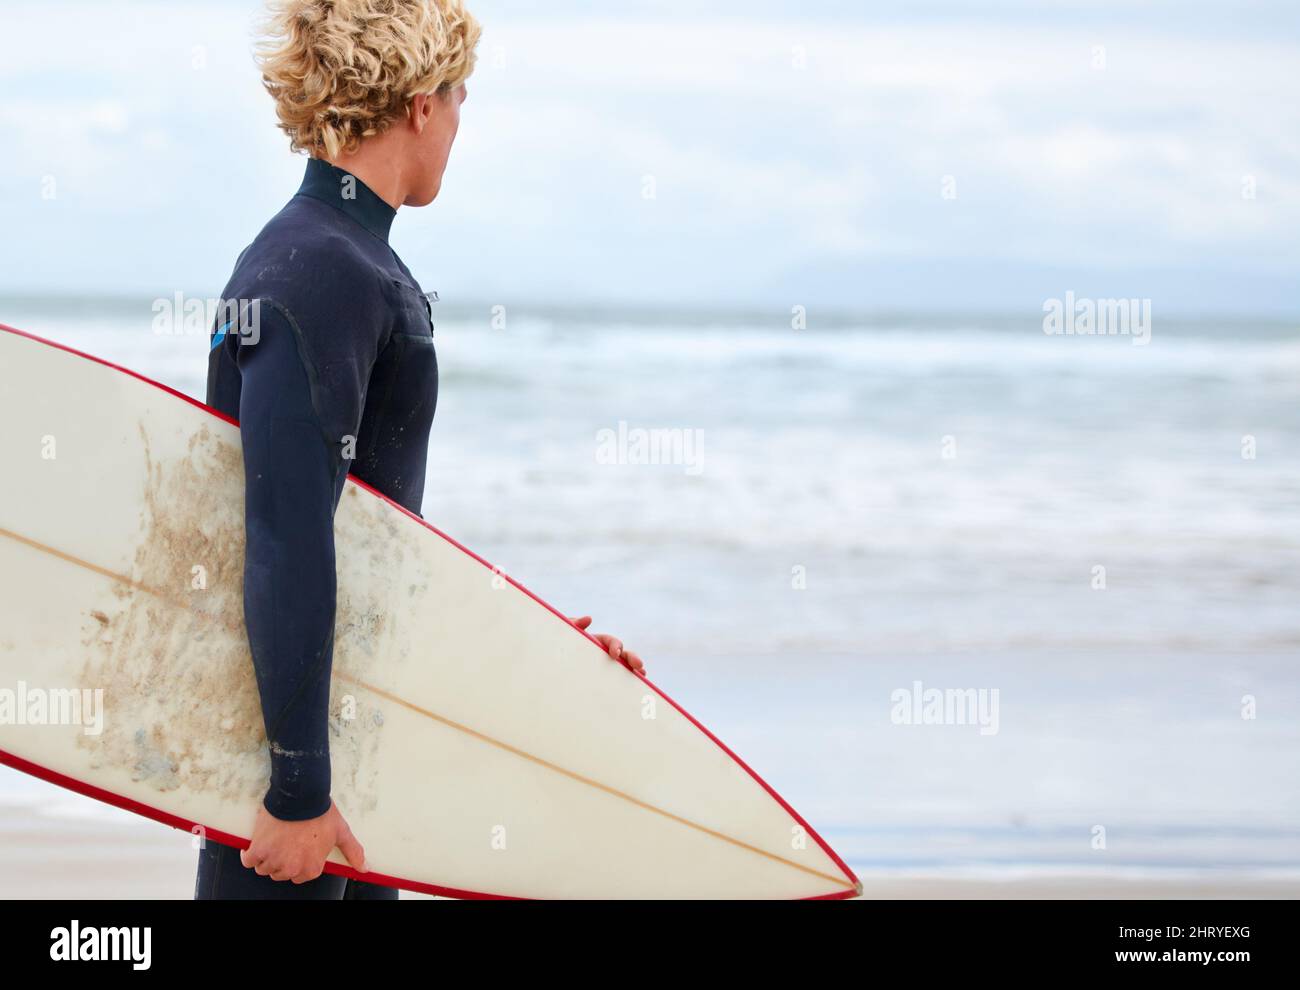 Alla ricerca di quella onda perfetta.... Un giovane surfista in piedi sulla spiaggia con l'oceano sullo sfondo. Foto Stock